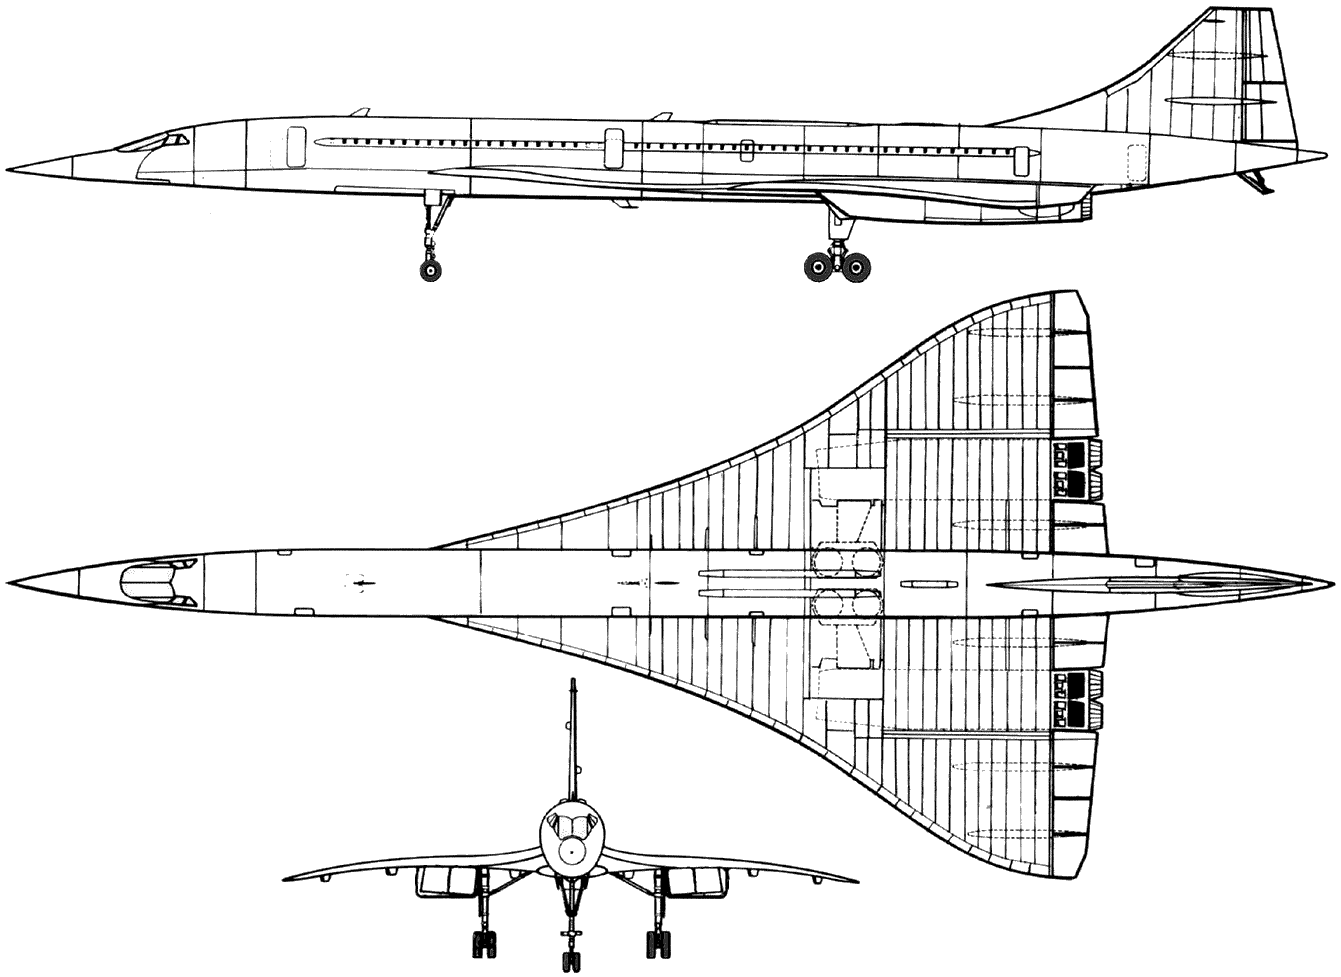 Concorde blueprint